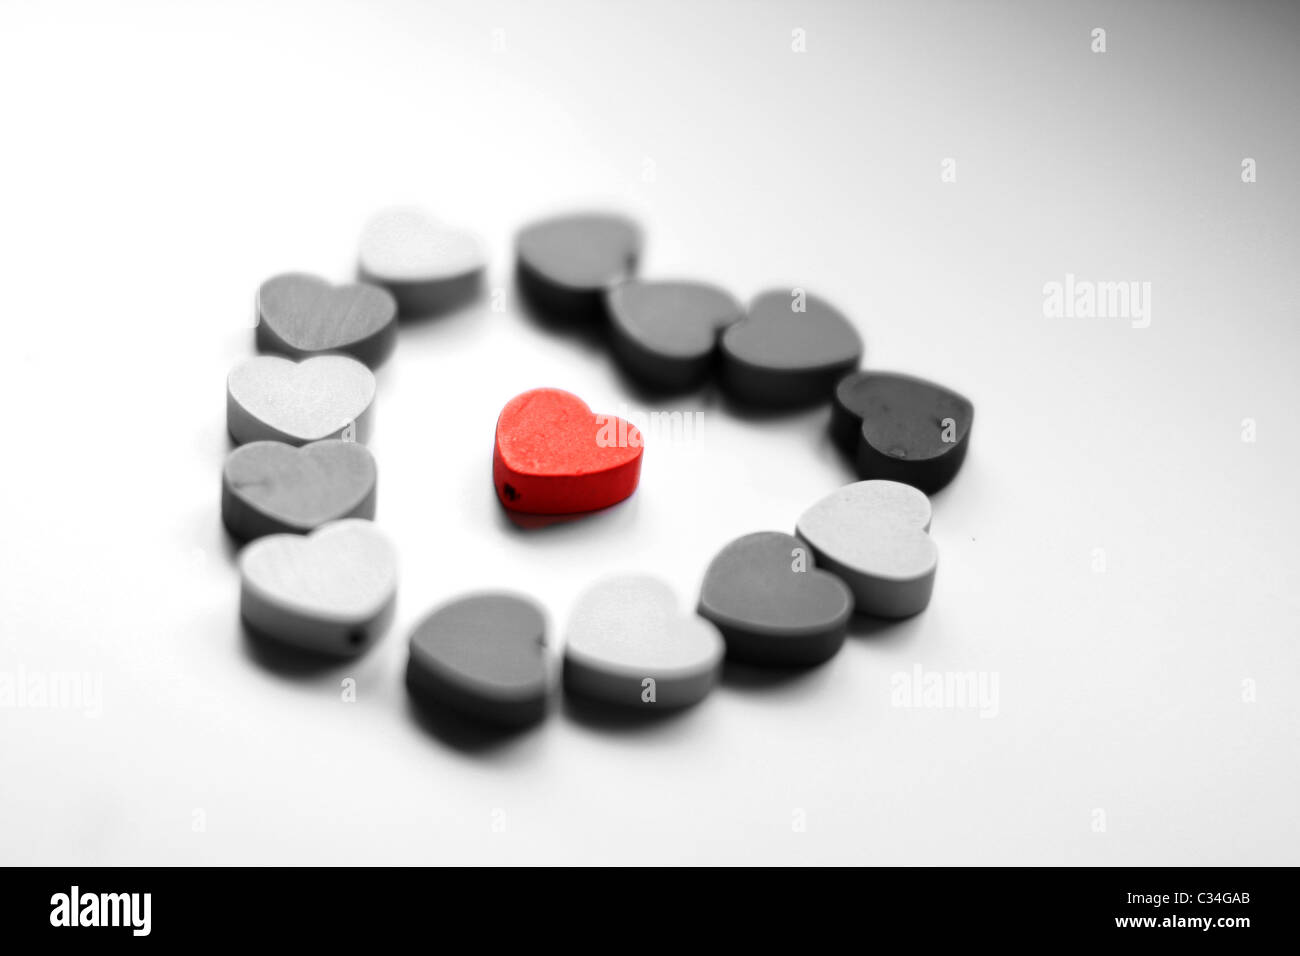 Cuore di legno cerchio in bianco e nero con un cuore rosso al centro dell'inquadratura Foto Stock